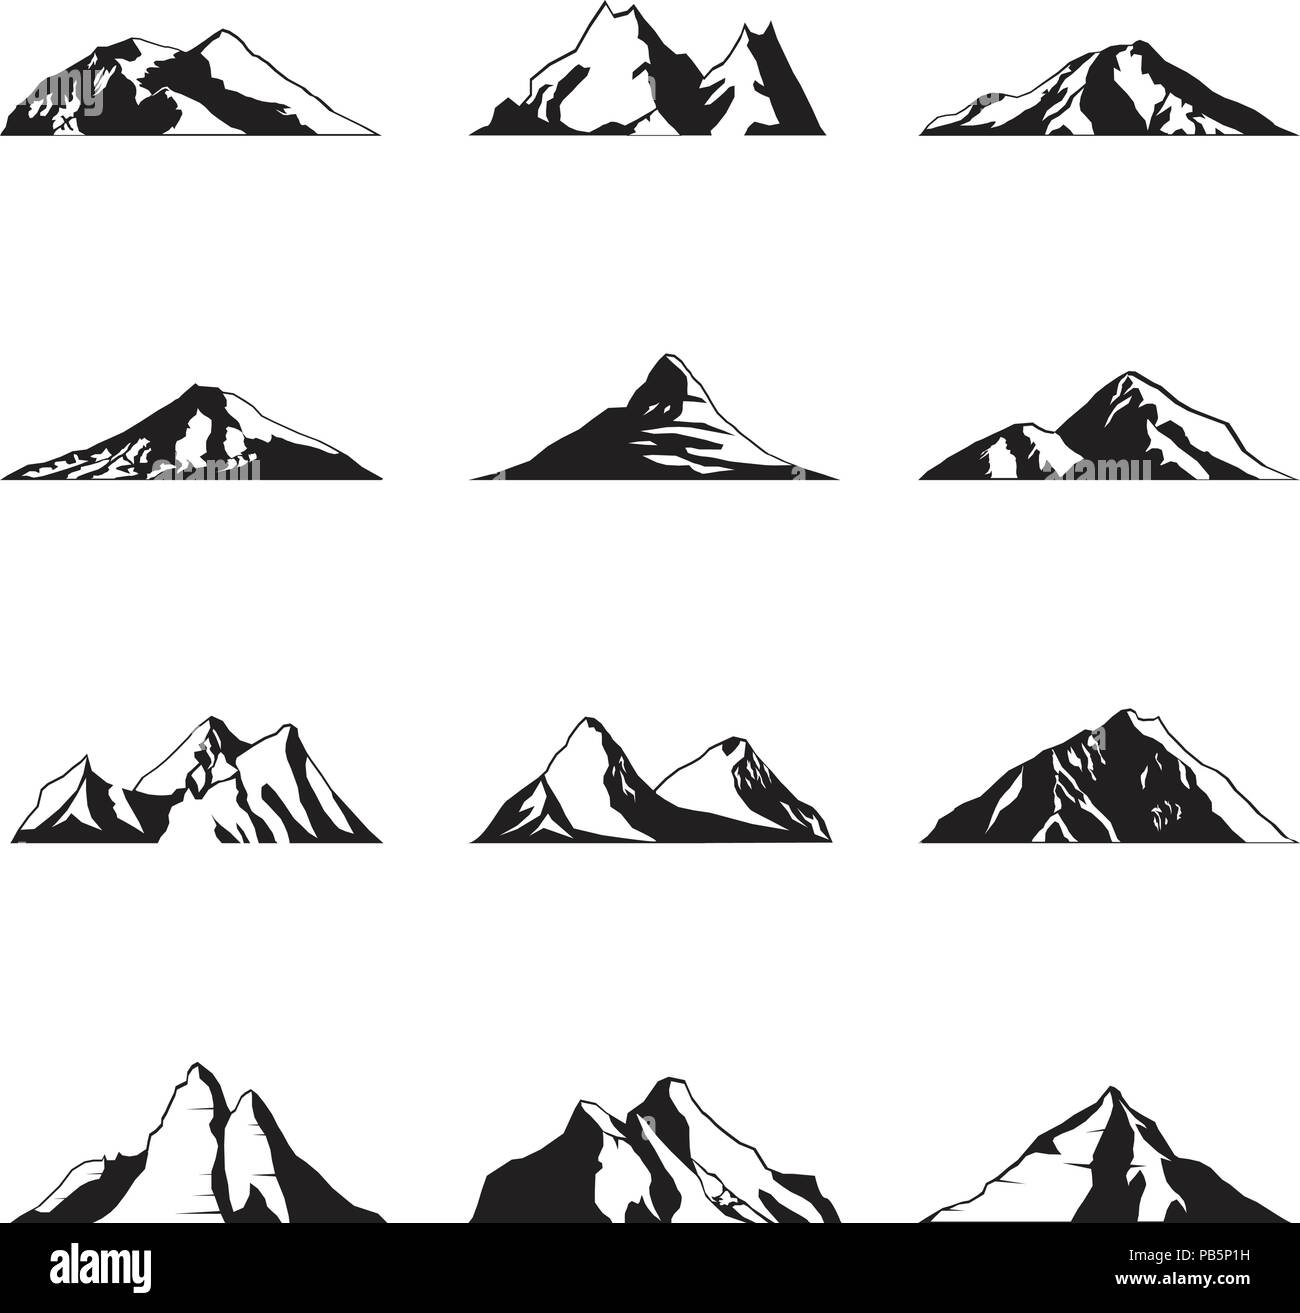 Printable Mountain Silhouette